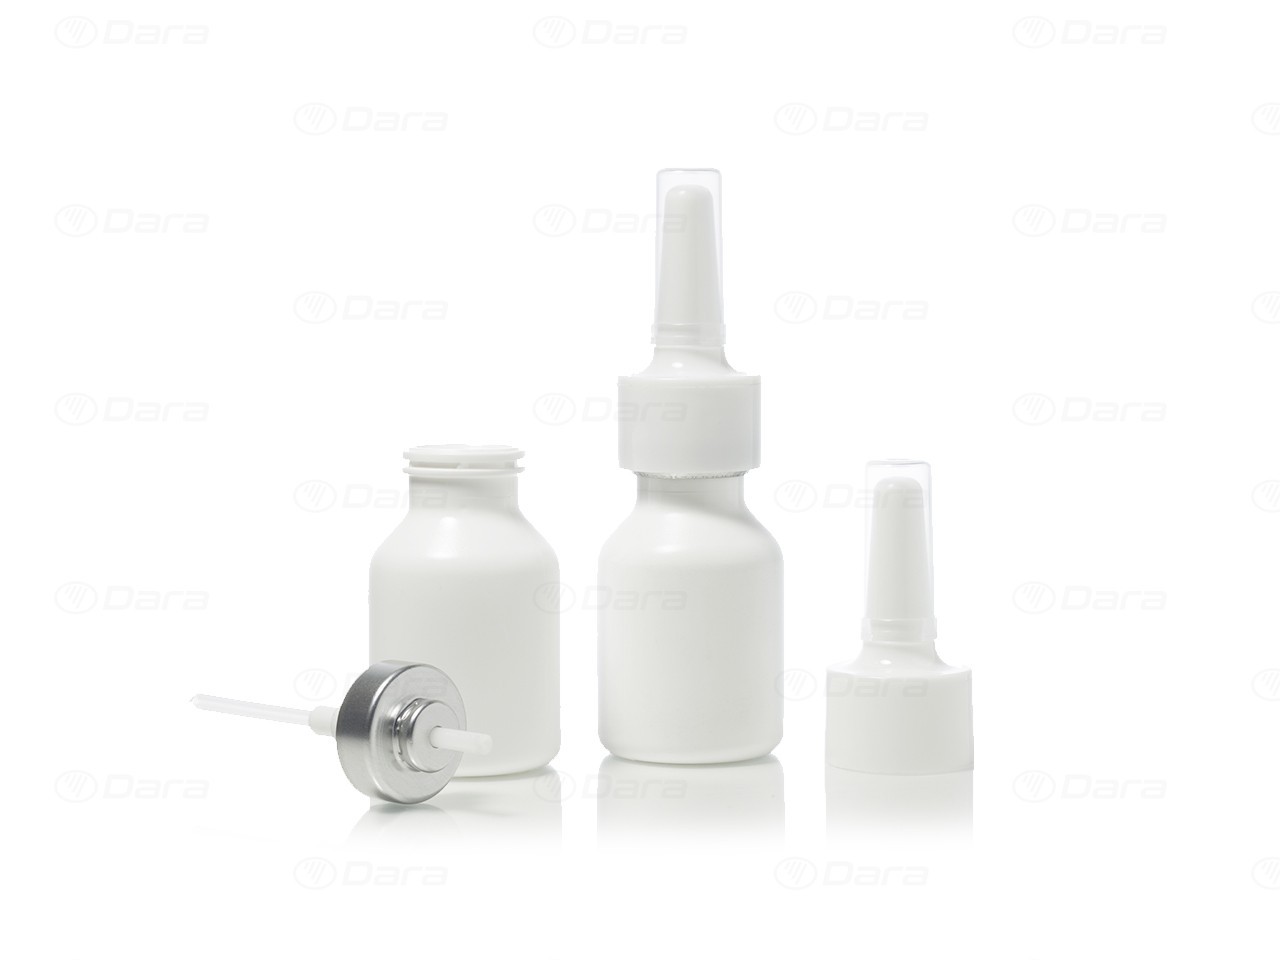 Llenadoras - cerradoras lineales para oftálmicos y nasales